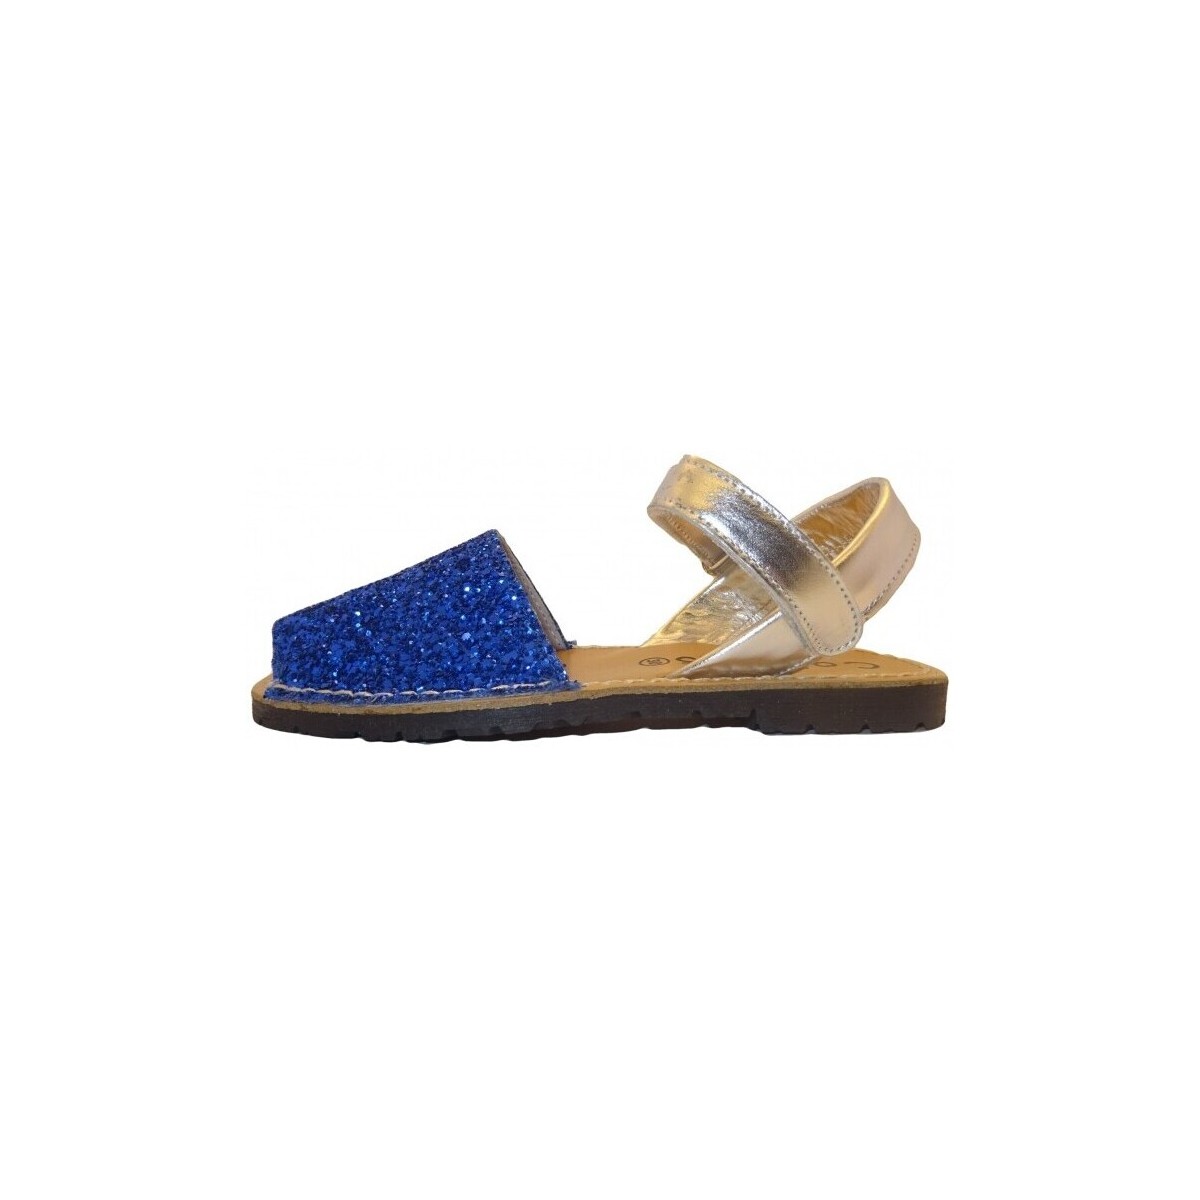 kengät Sandaalit ja avokkaat Colores 20112-18 Sininen